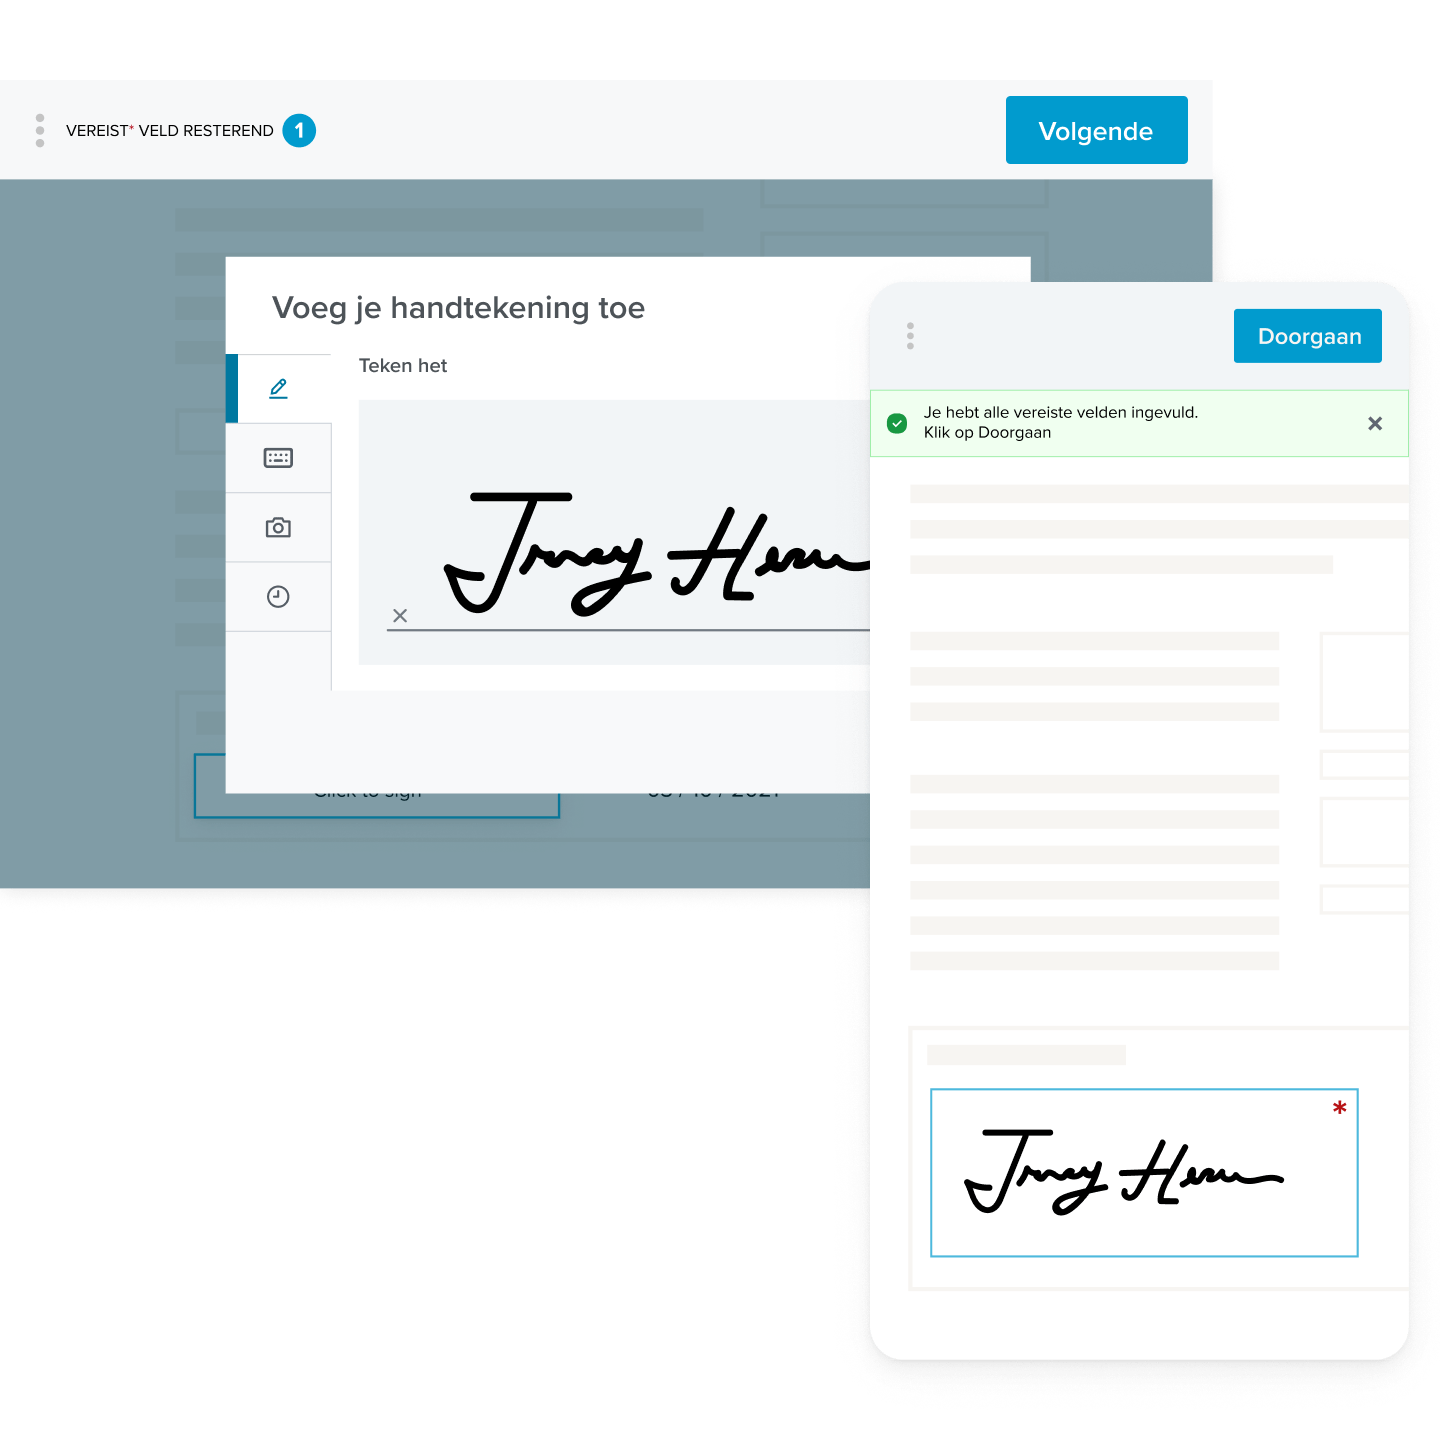 De interface voor digitale handtekeningen, met een handtekening die is toegevoegd aan een formulier, op desktops en mobiele apparaten